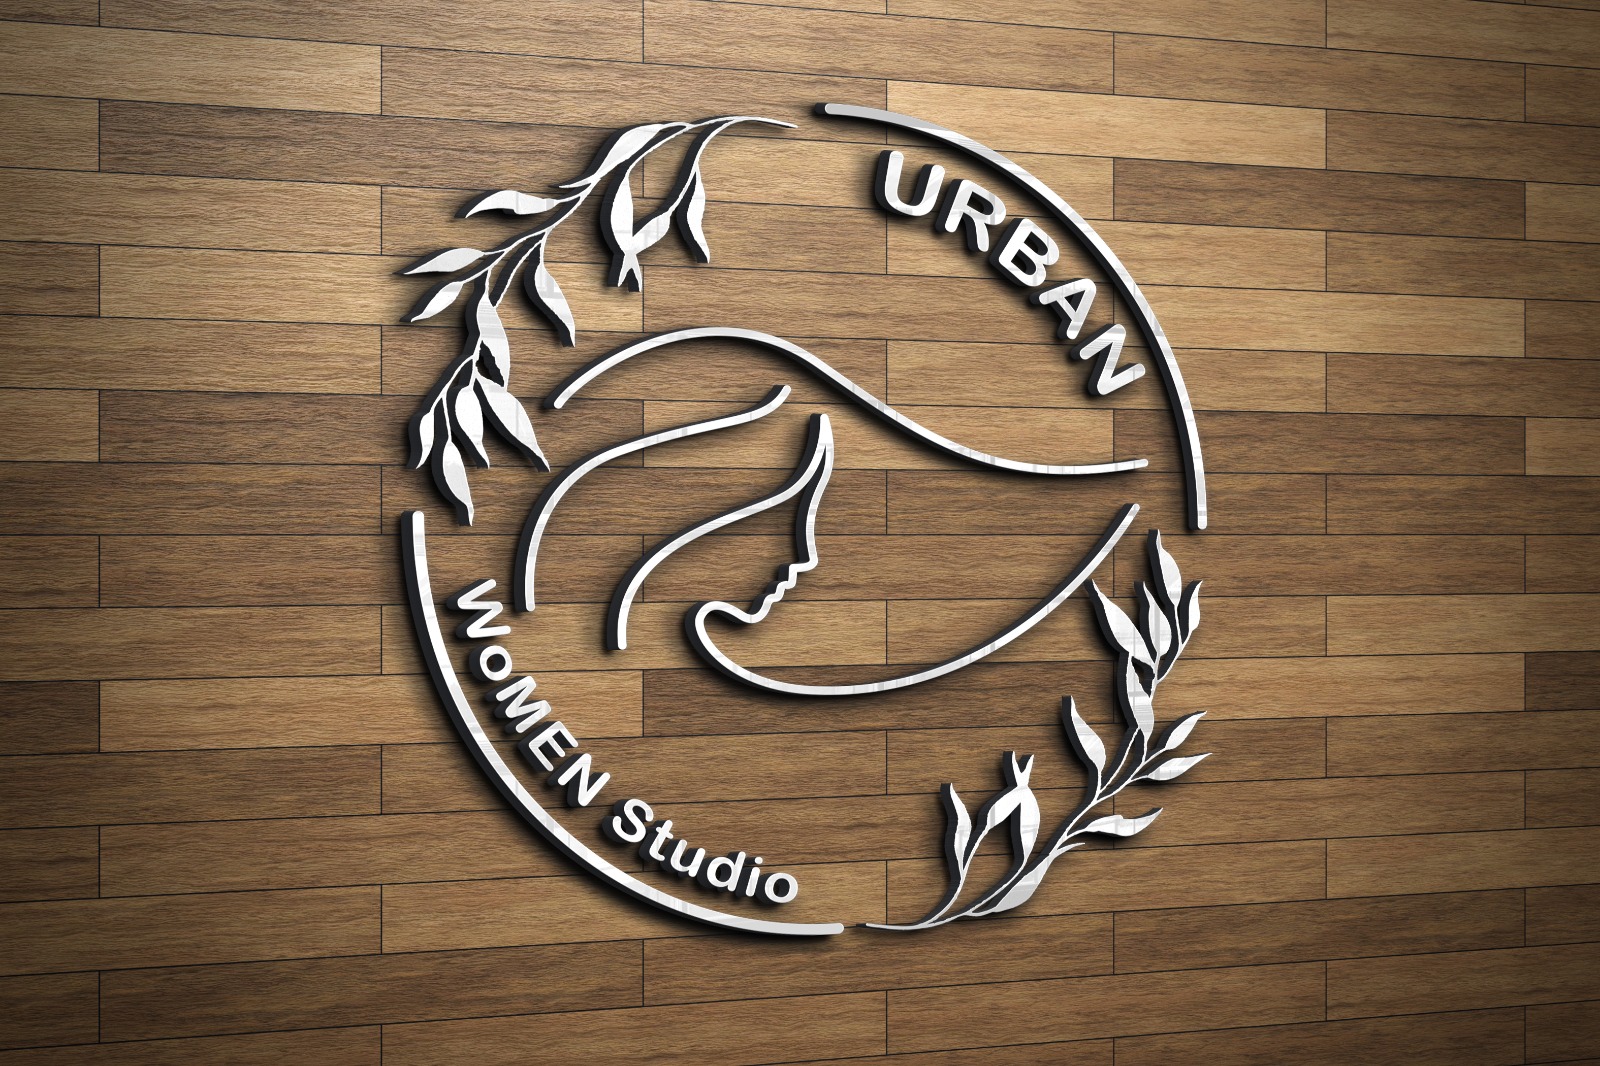 Urban WoMen Studio